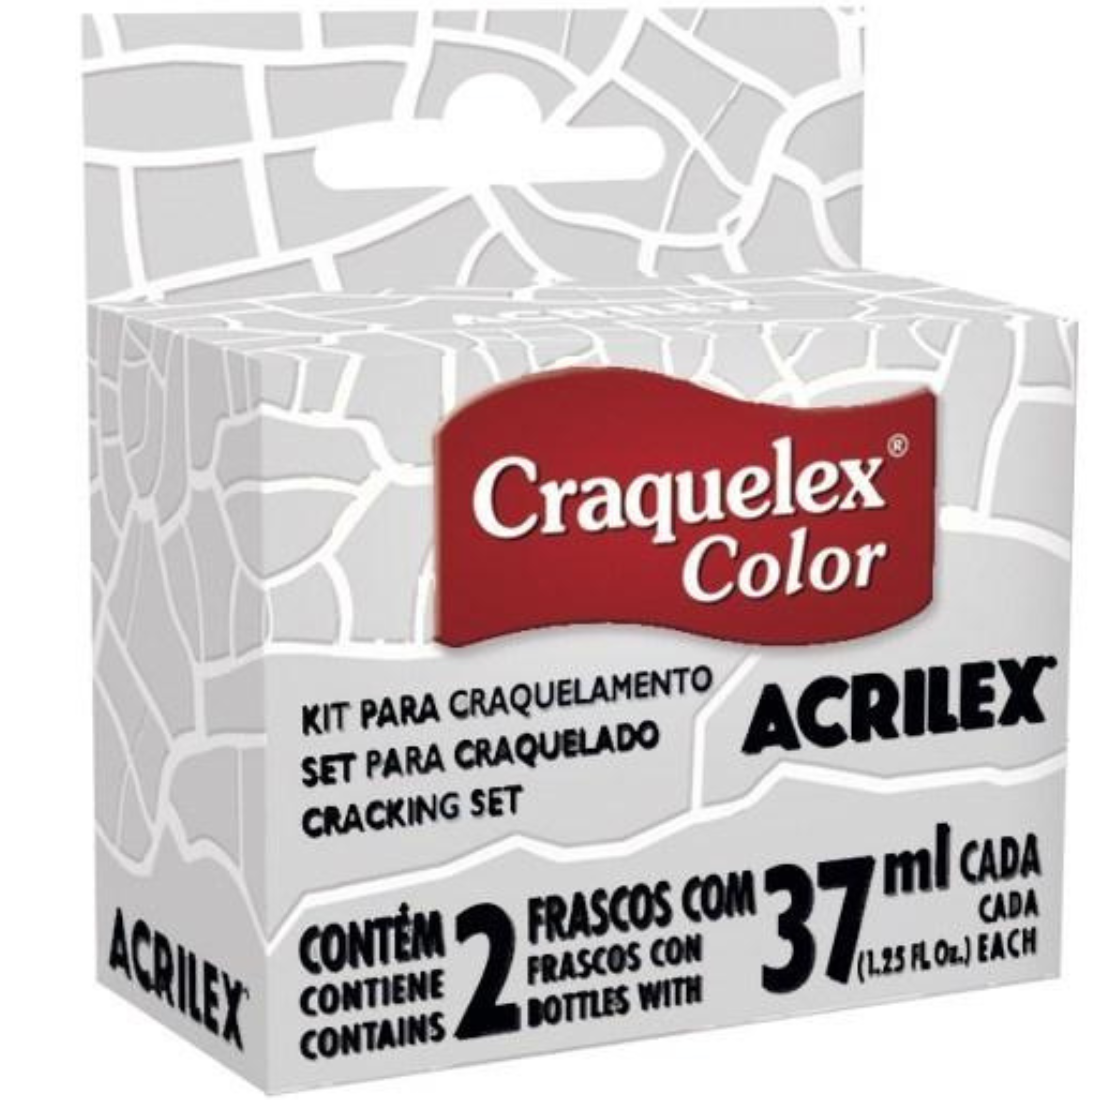 Kit para Craquelamento Craquelex